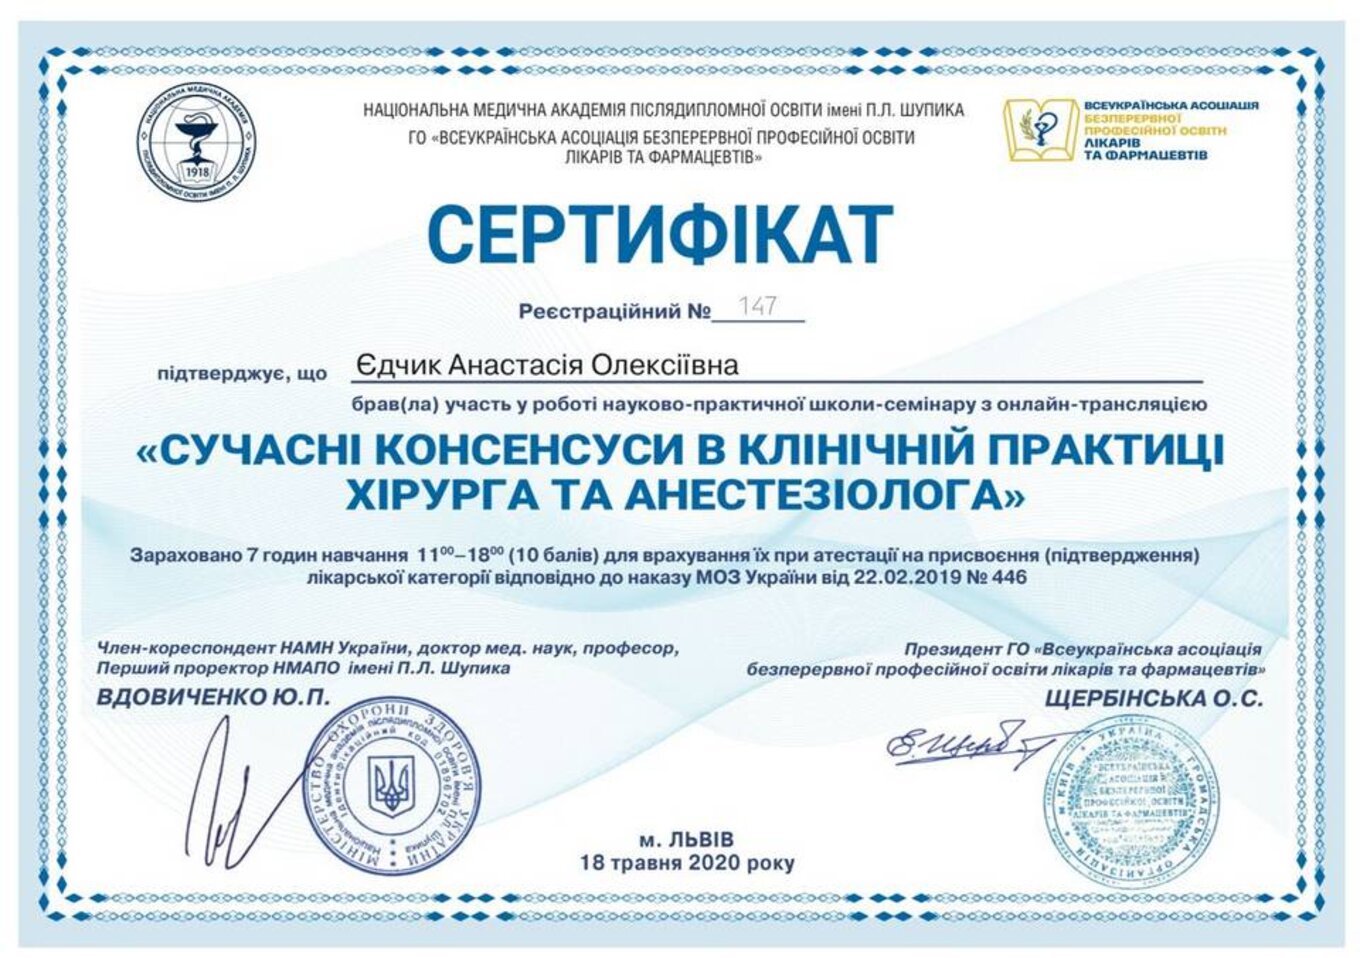 certificates/yedchik-anastasiya-oleksiyivna/erc-edchik-cert-25.jpg